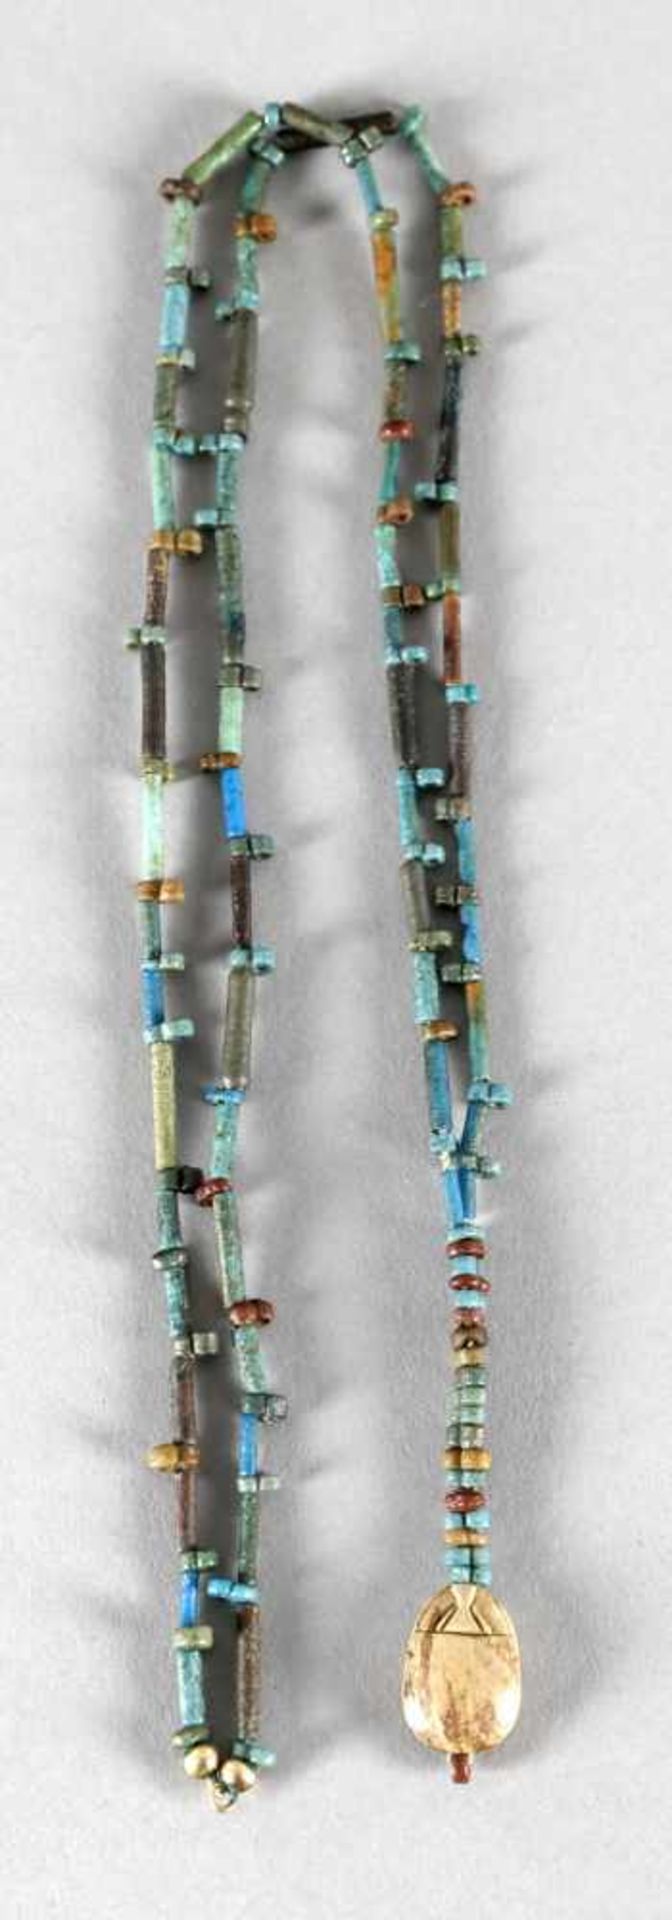 Ägyptische Fayencekette mit Skarabäusabwechselnd längliche und schmale Perlen in Blau-, Grün- und